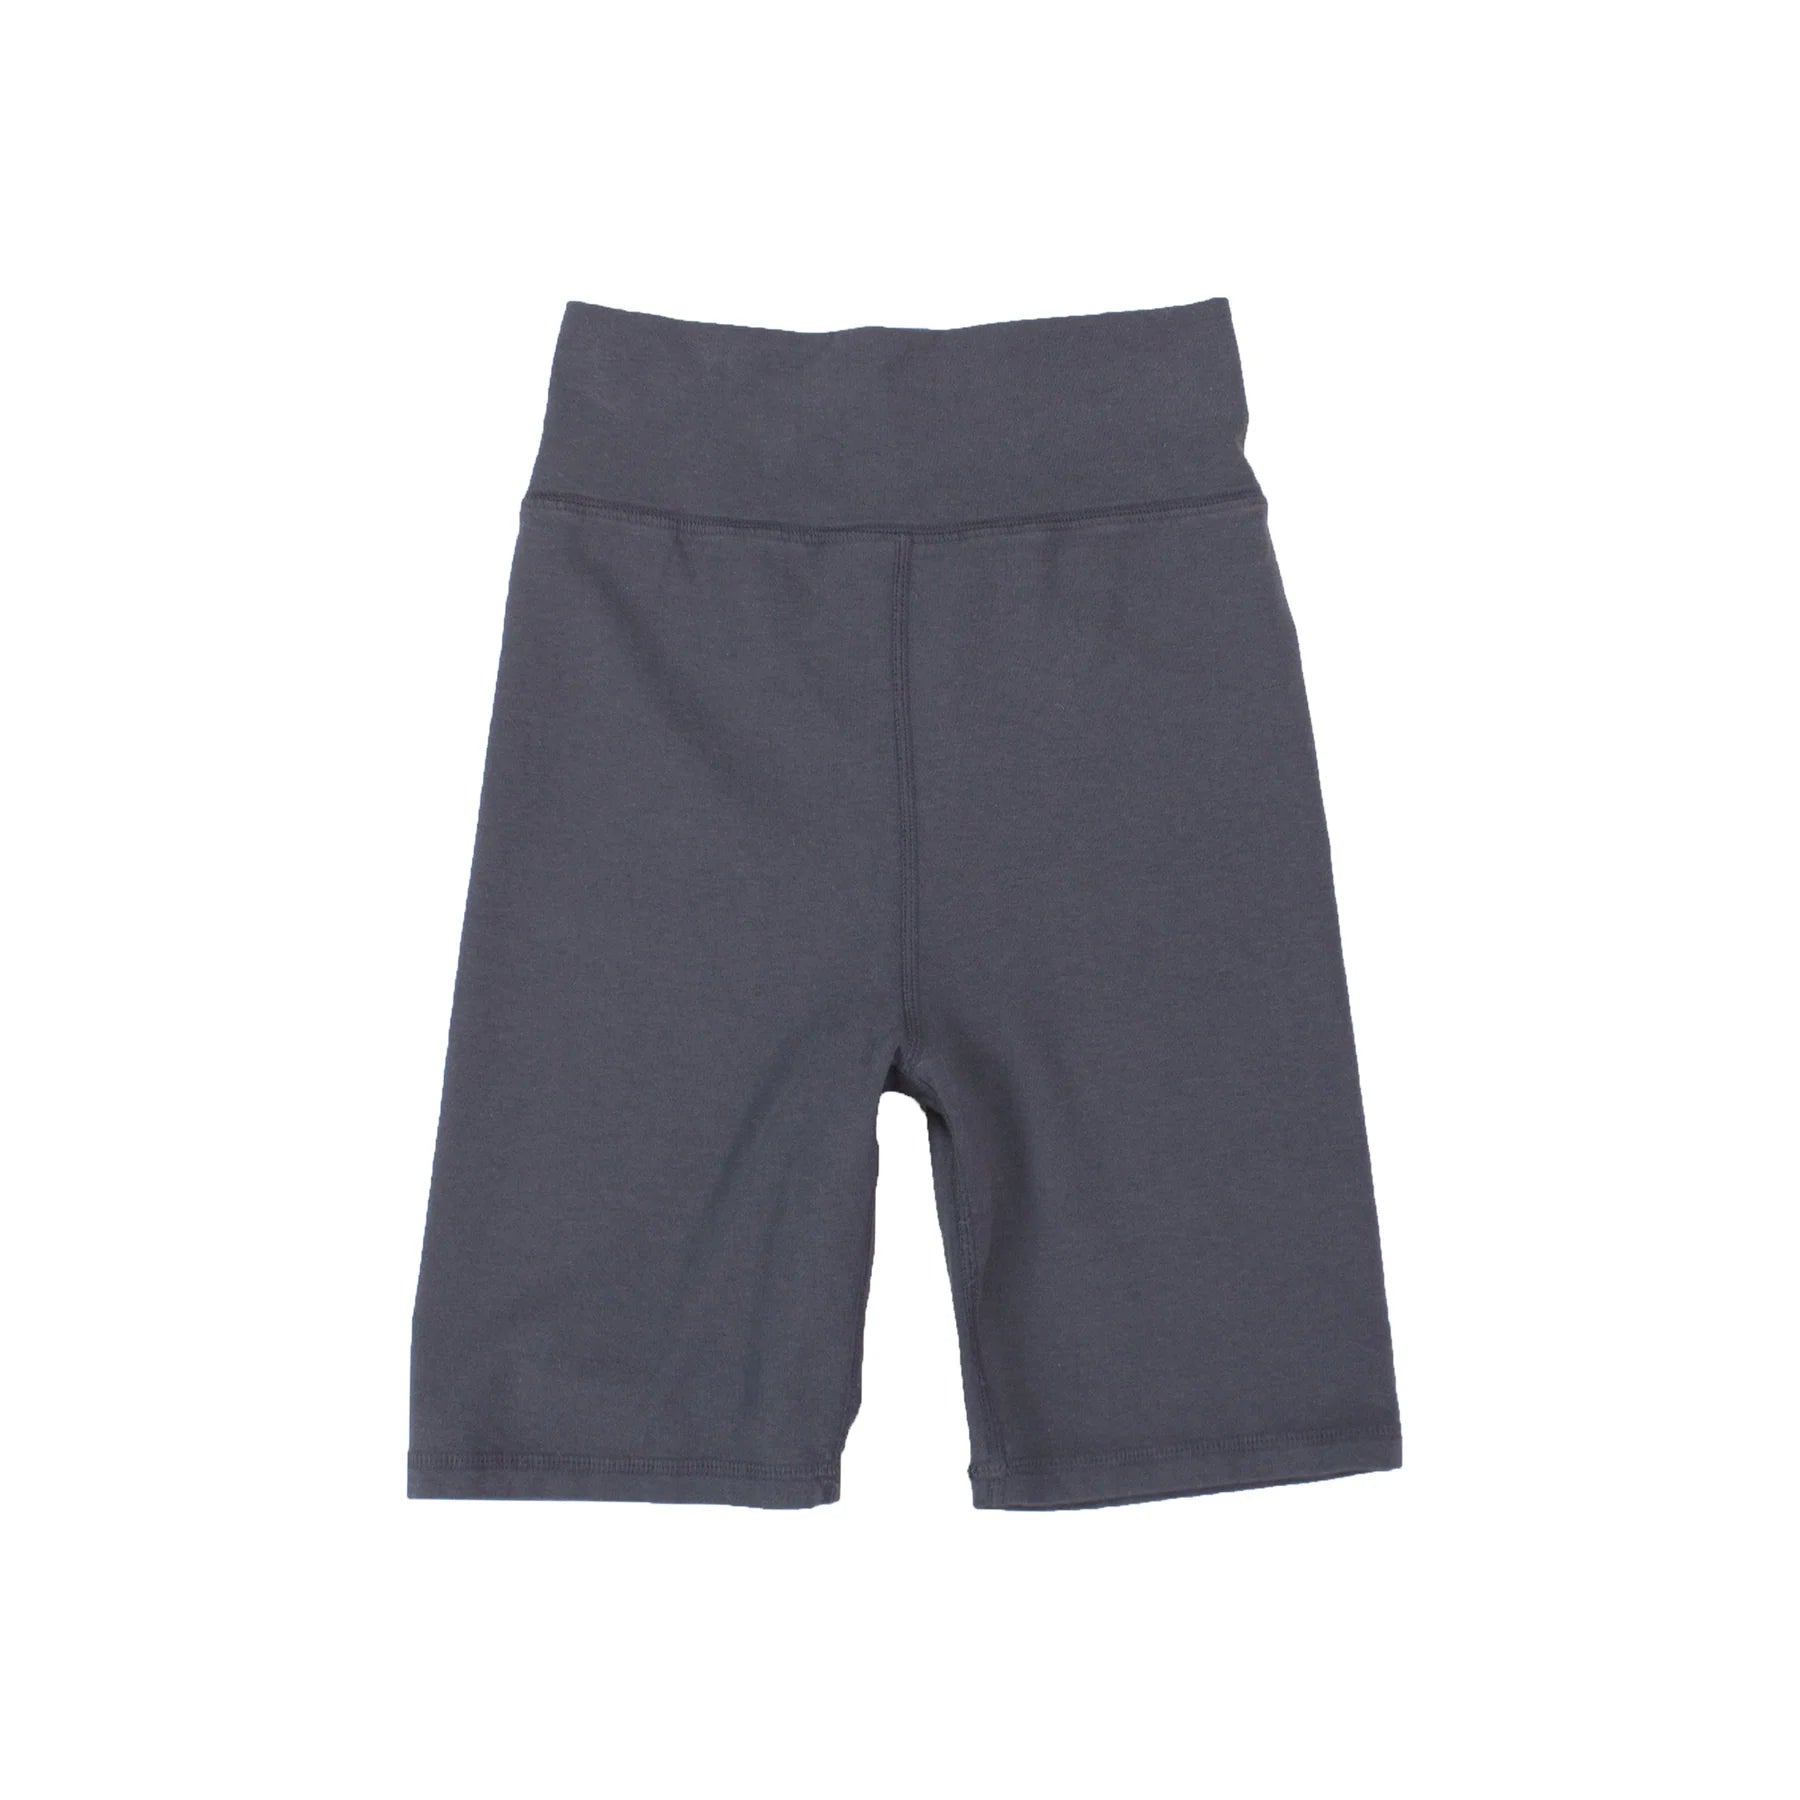 Cotton No Chub Rub Bike Shorts with Pockets (Black) – Lola Monroe Boutique